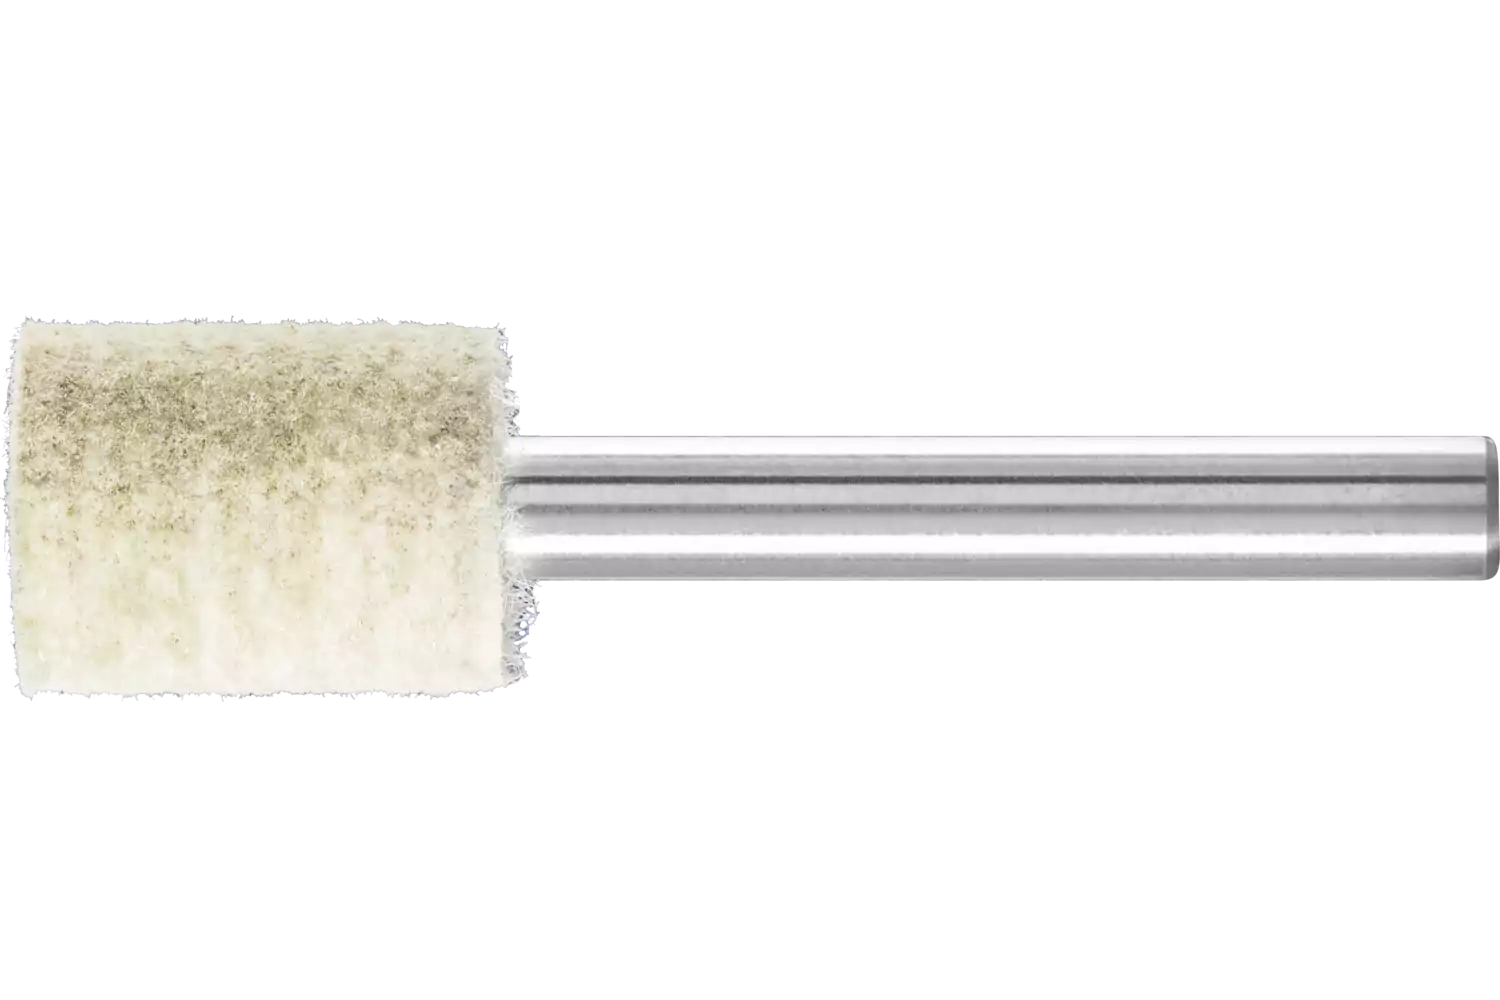 Feltri con gambo per lucidare duri forma cilindrica con foro frontale Ø 15x20 mm, gambo Ø 6 mm con inserto in metallo 1